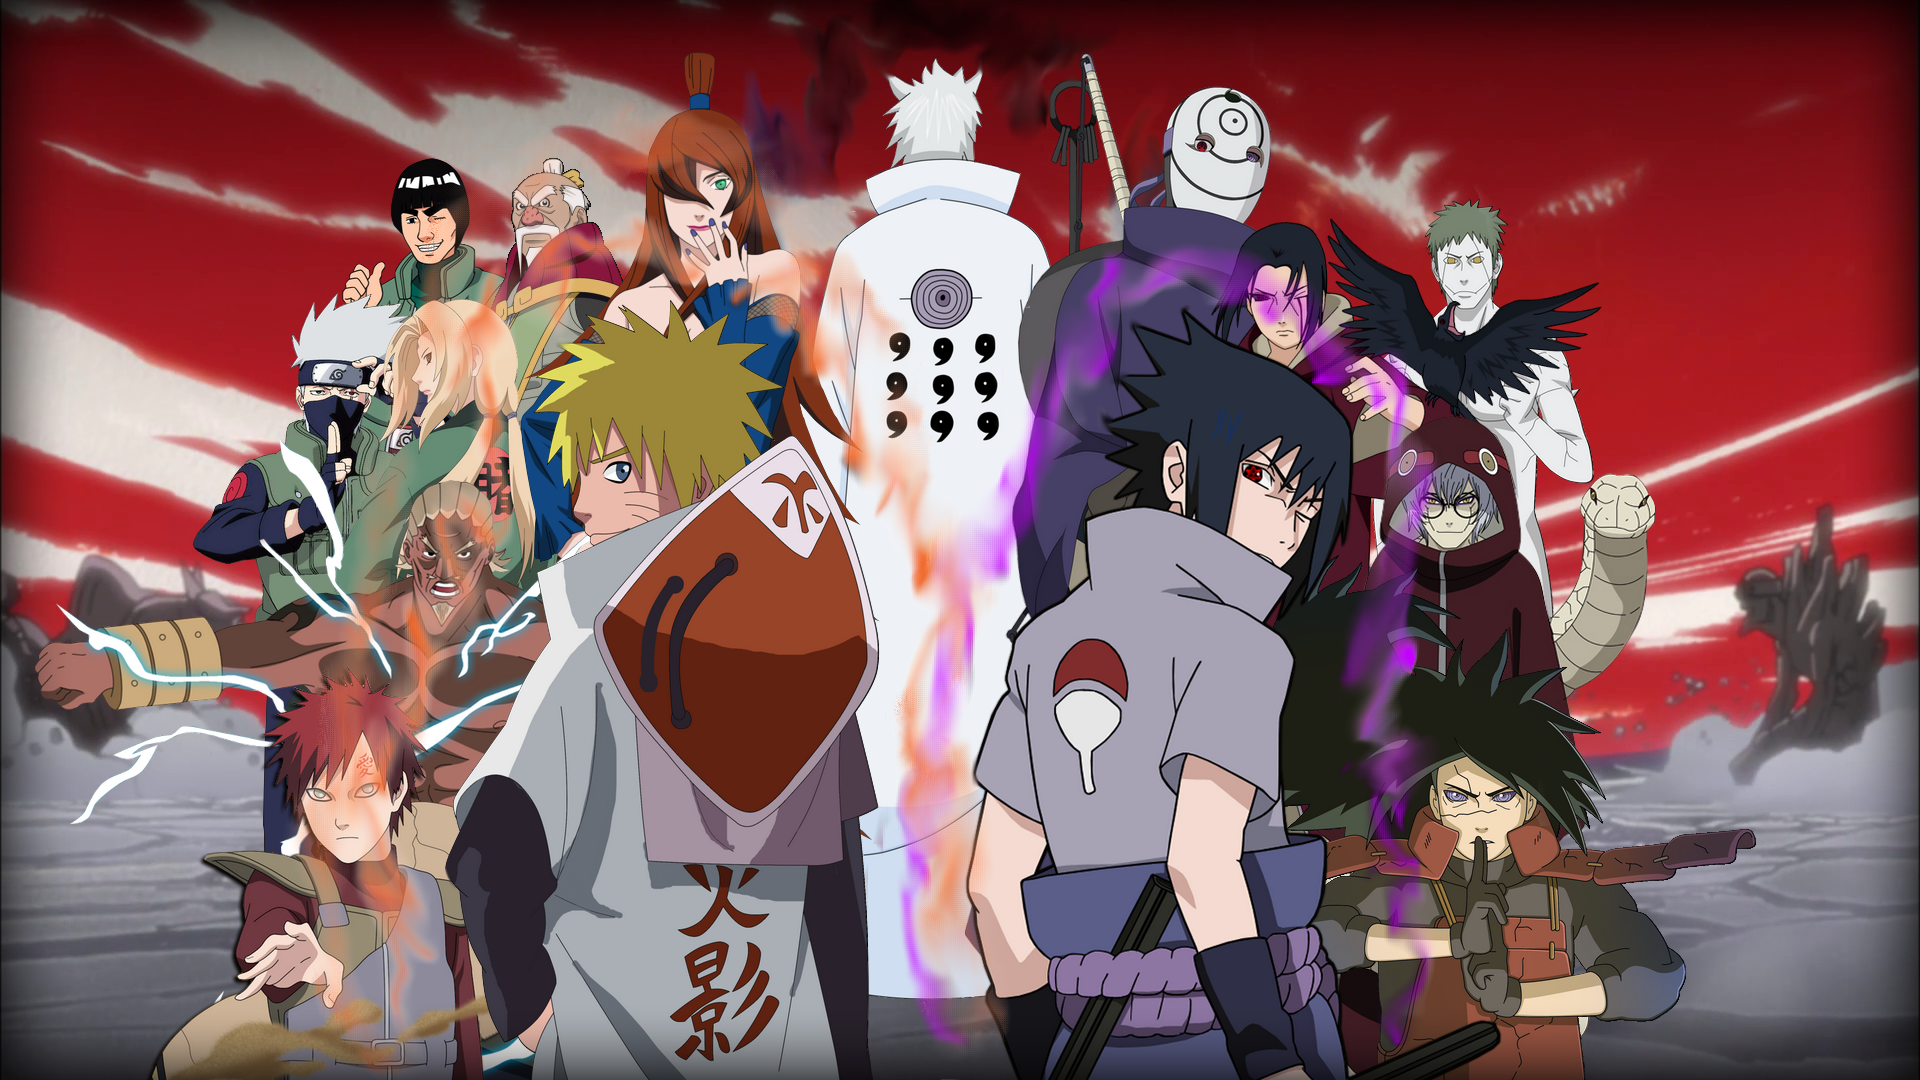 Naruto: Bạn là một fan của Naruto? Hãy đón xem hình ảnh liên quan đến series anime/manga nổi tiếng này để khám phá thêm về thế giới ninja tuyệt vời và những chiến binh tài ba như Naruto, Sasuke hay Sakura!